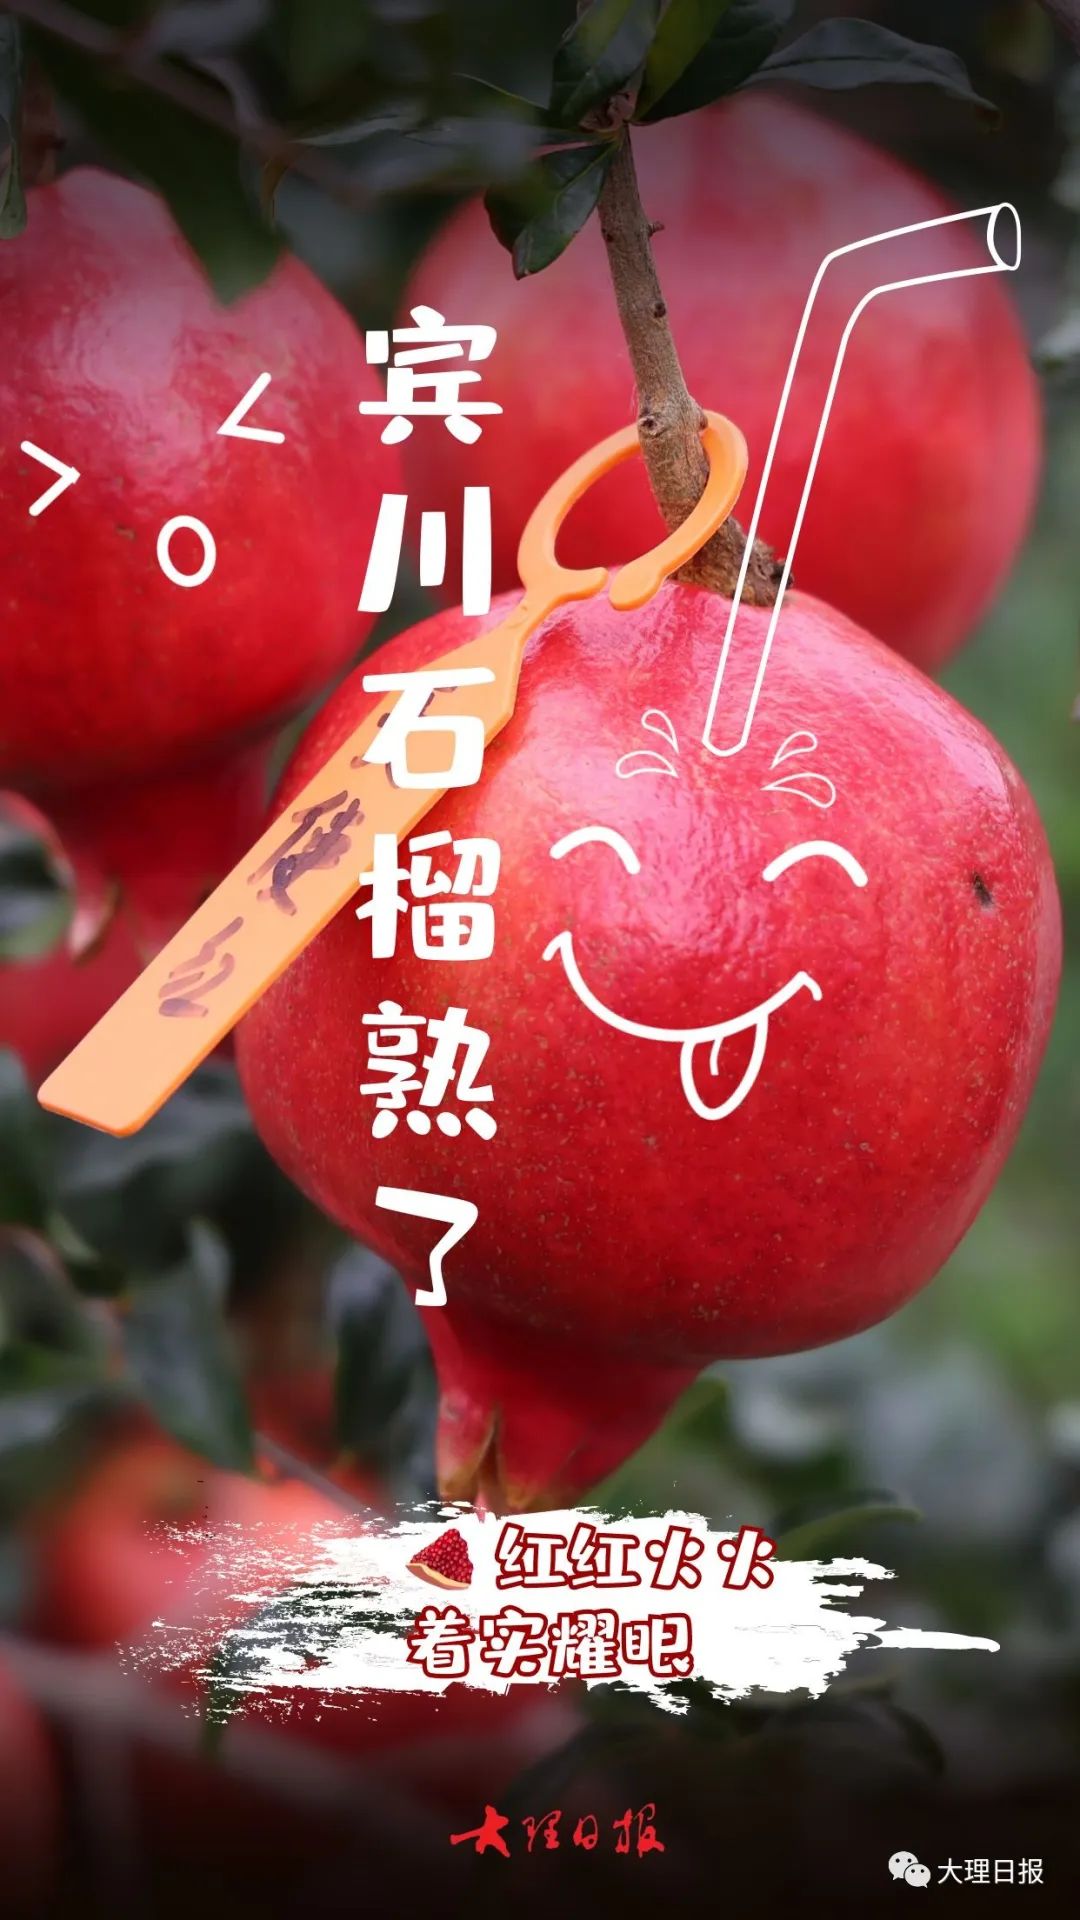 云南宾川葡萄在沪举办推介会 “宾果儿”三大品种齐亮相 | 国际果蔬报道